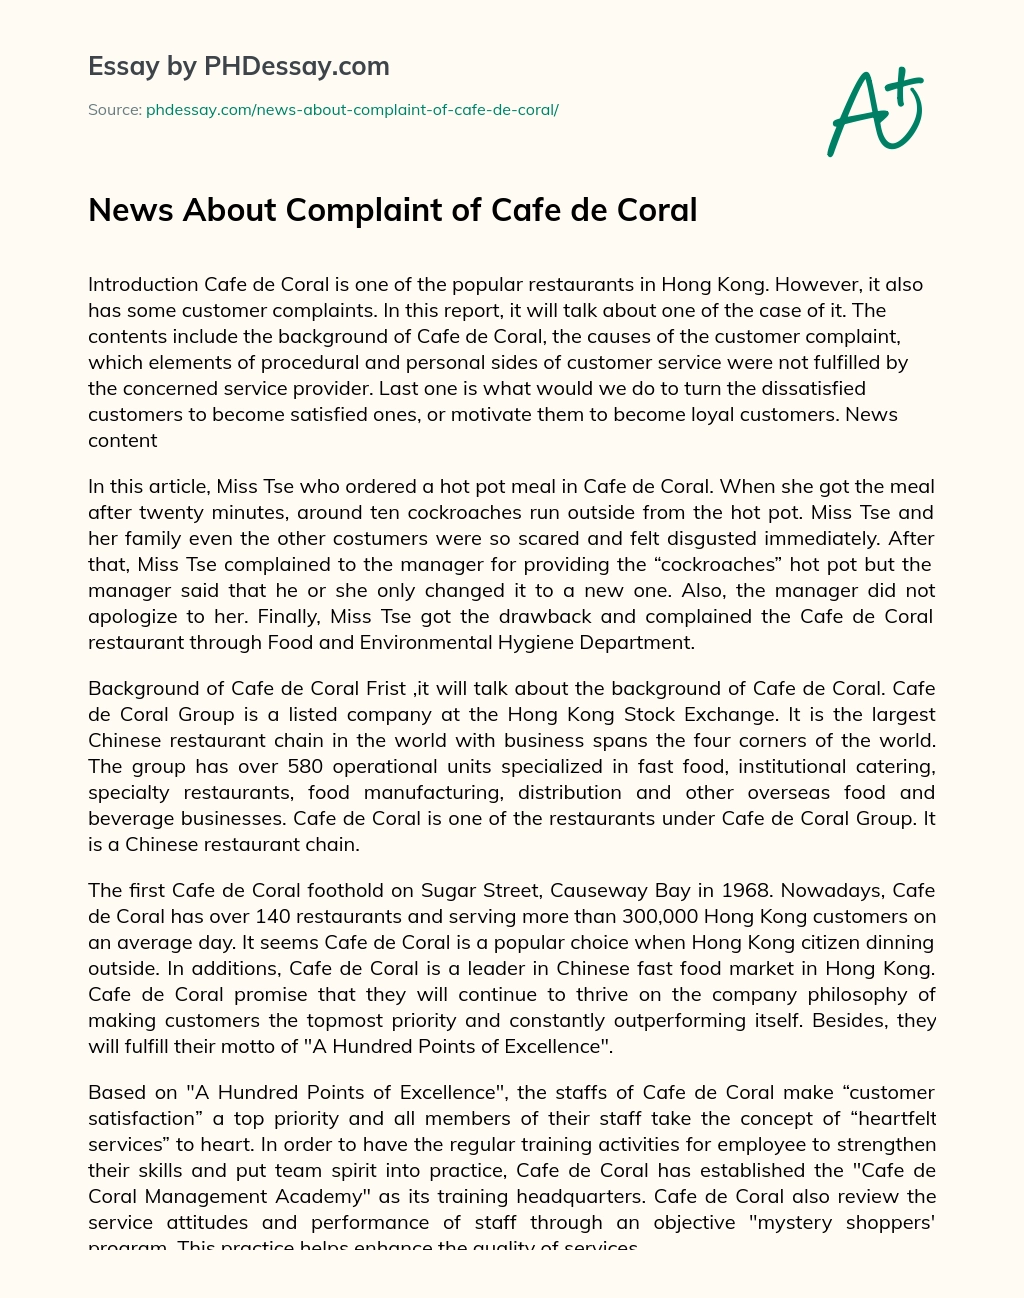 News About Complaint of Cafe de Coral essay